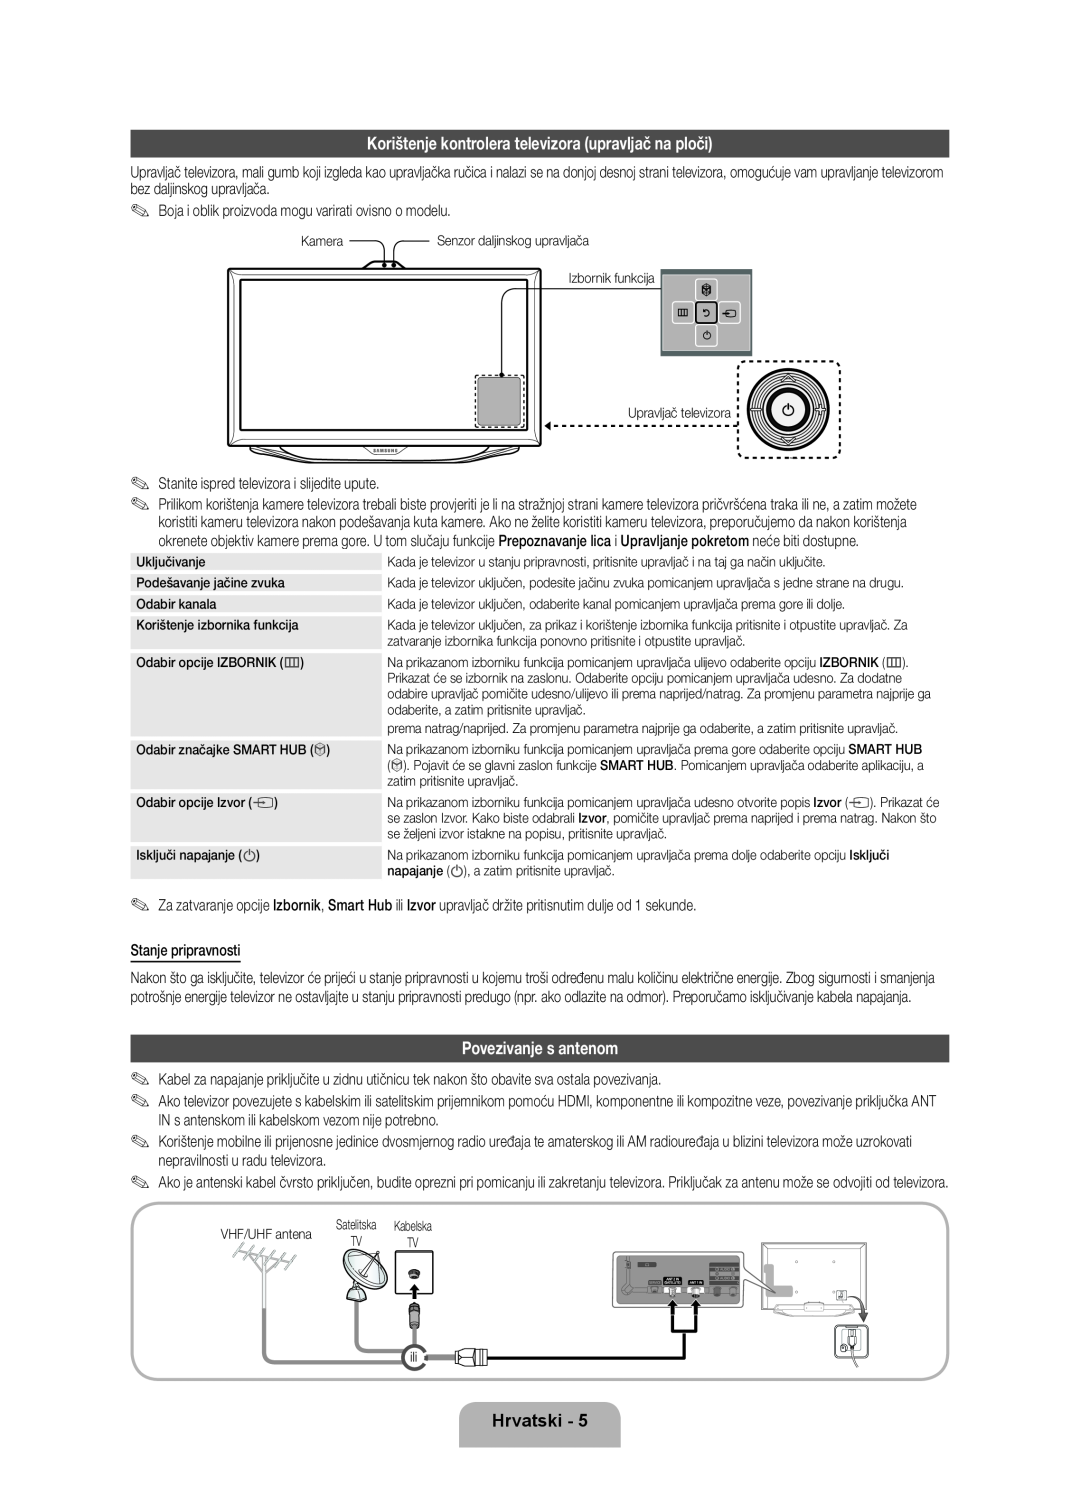 Samsung UE40ES8000SXXN manual Korištenje kontrolera televizora upravljač na ploči, Povezivanje s antenom, Hrvatski 